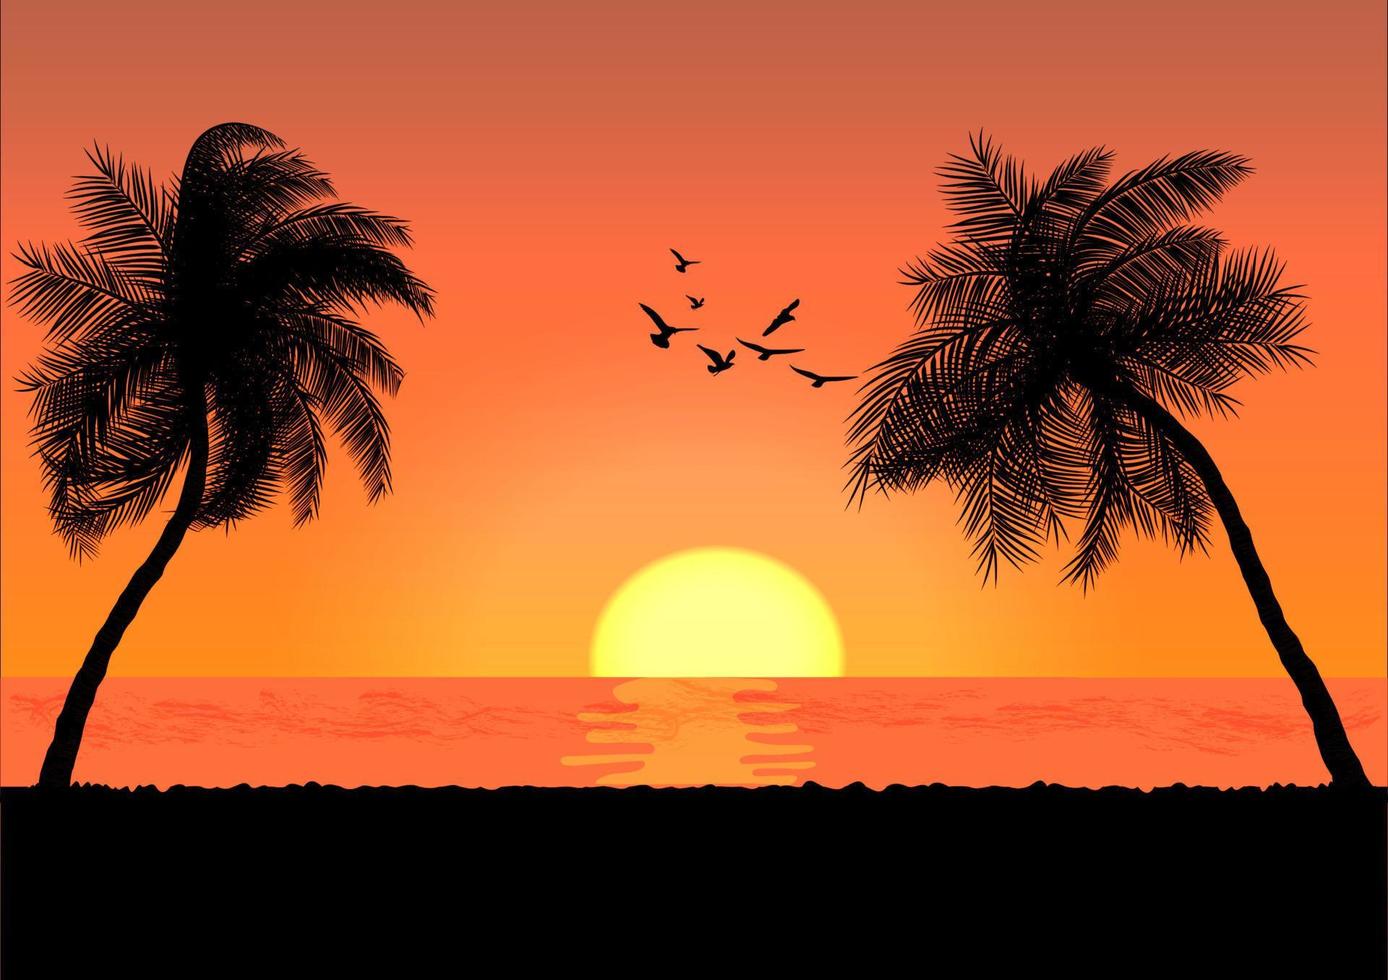 landskapsvy rita palm med solnedgång eller soluppgång bakgrund vektor illustration koncept romantisk